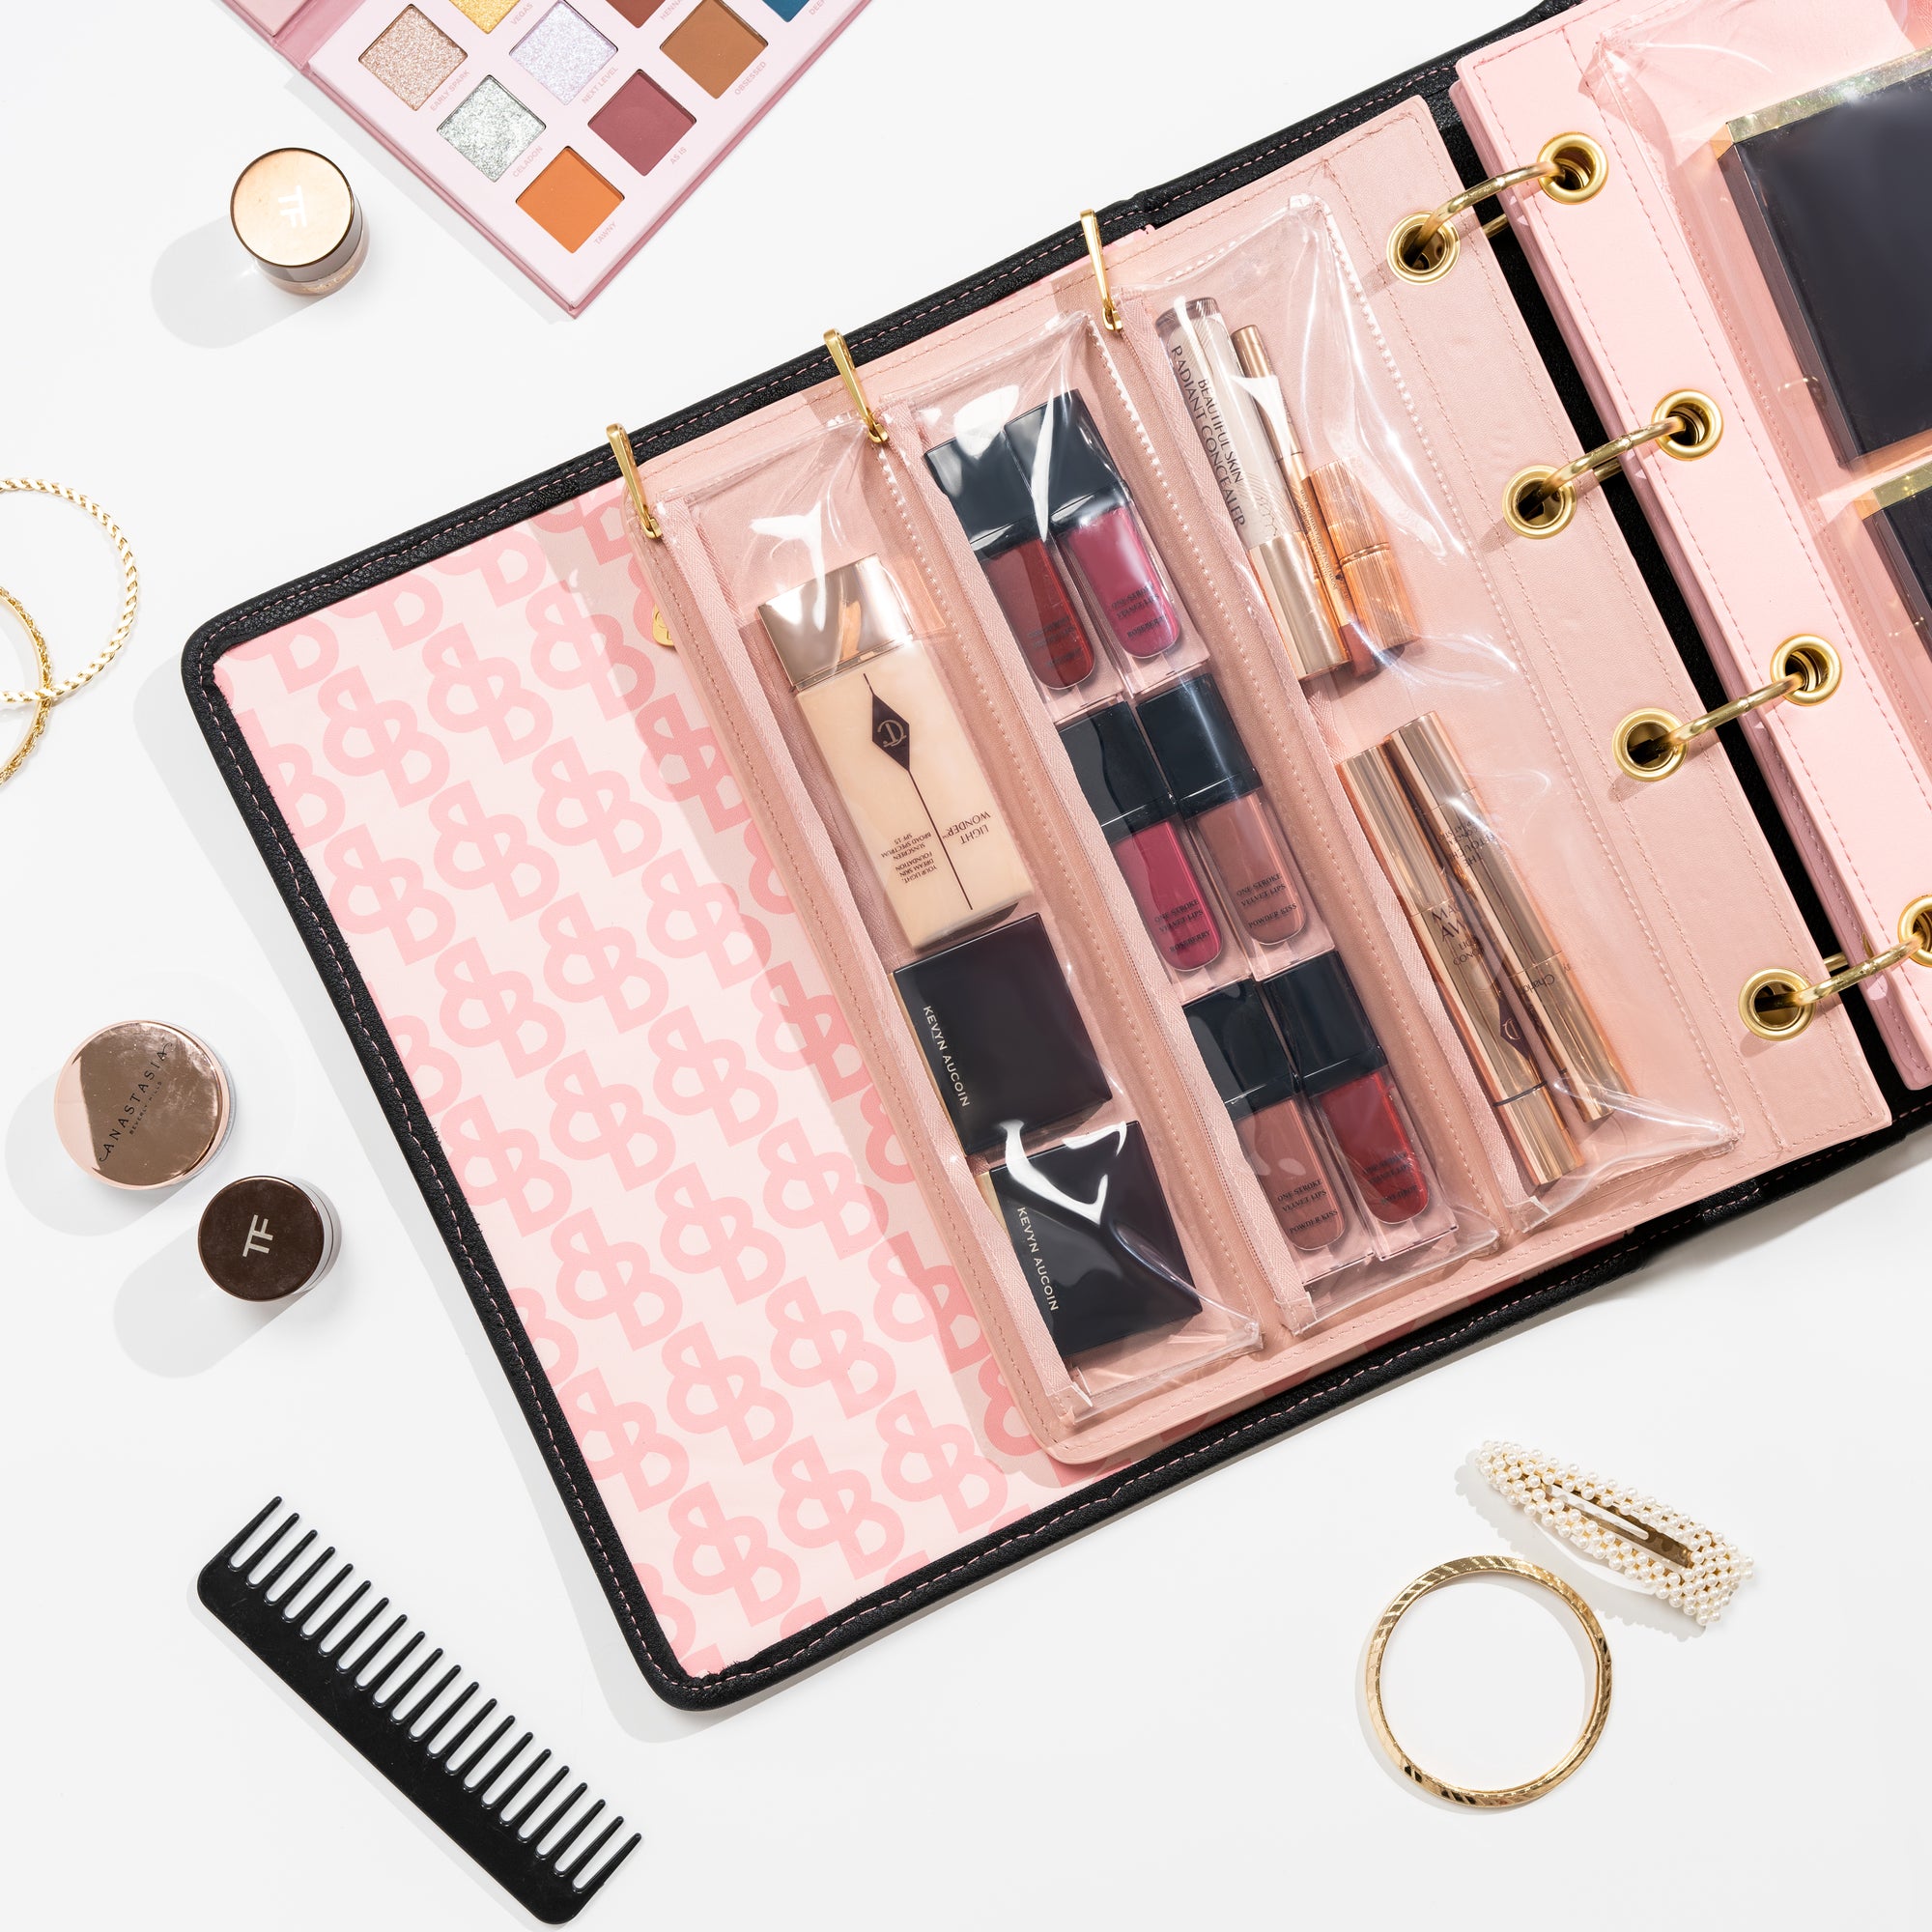 makeup with case; makeup organizer bag; makeup organizer box; beauty organizer; makeup organizer ideas; makeup organizer for vanity; 